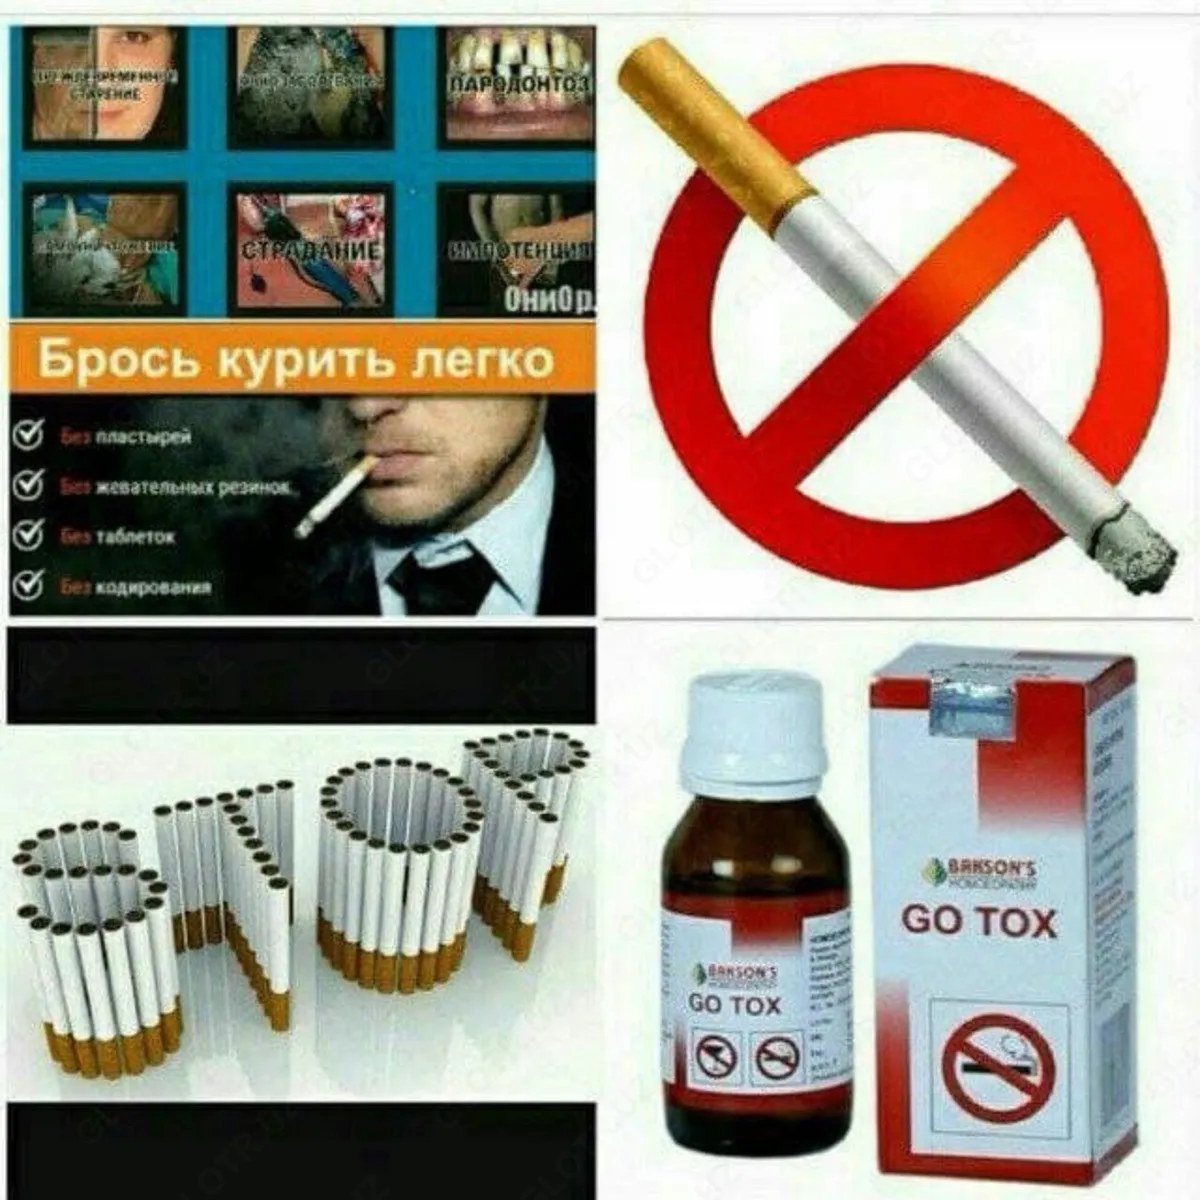 Капли для уменьшения тяги к сигаретам и алкоголю Go Tox#3